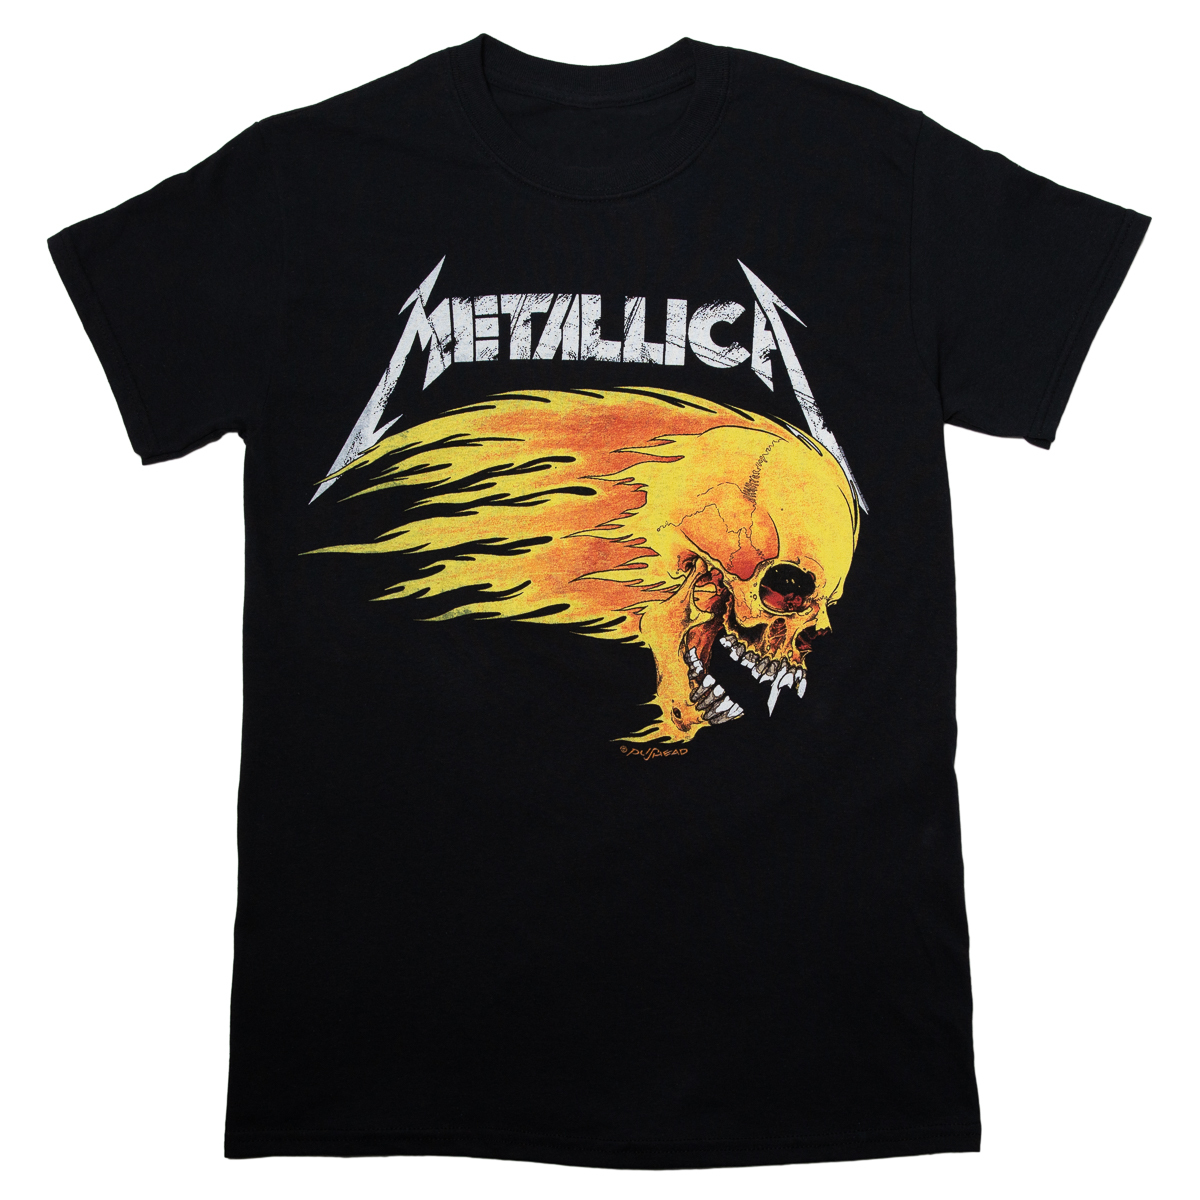 Metallica Flaming Skull Tour Tee Männer T-Shirt schwarz Band-Merch Bands